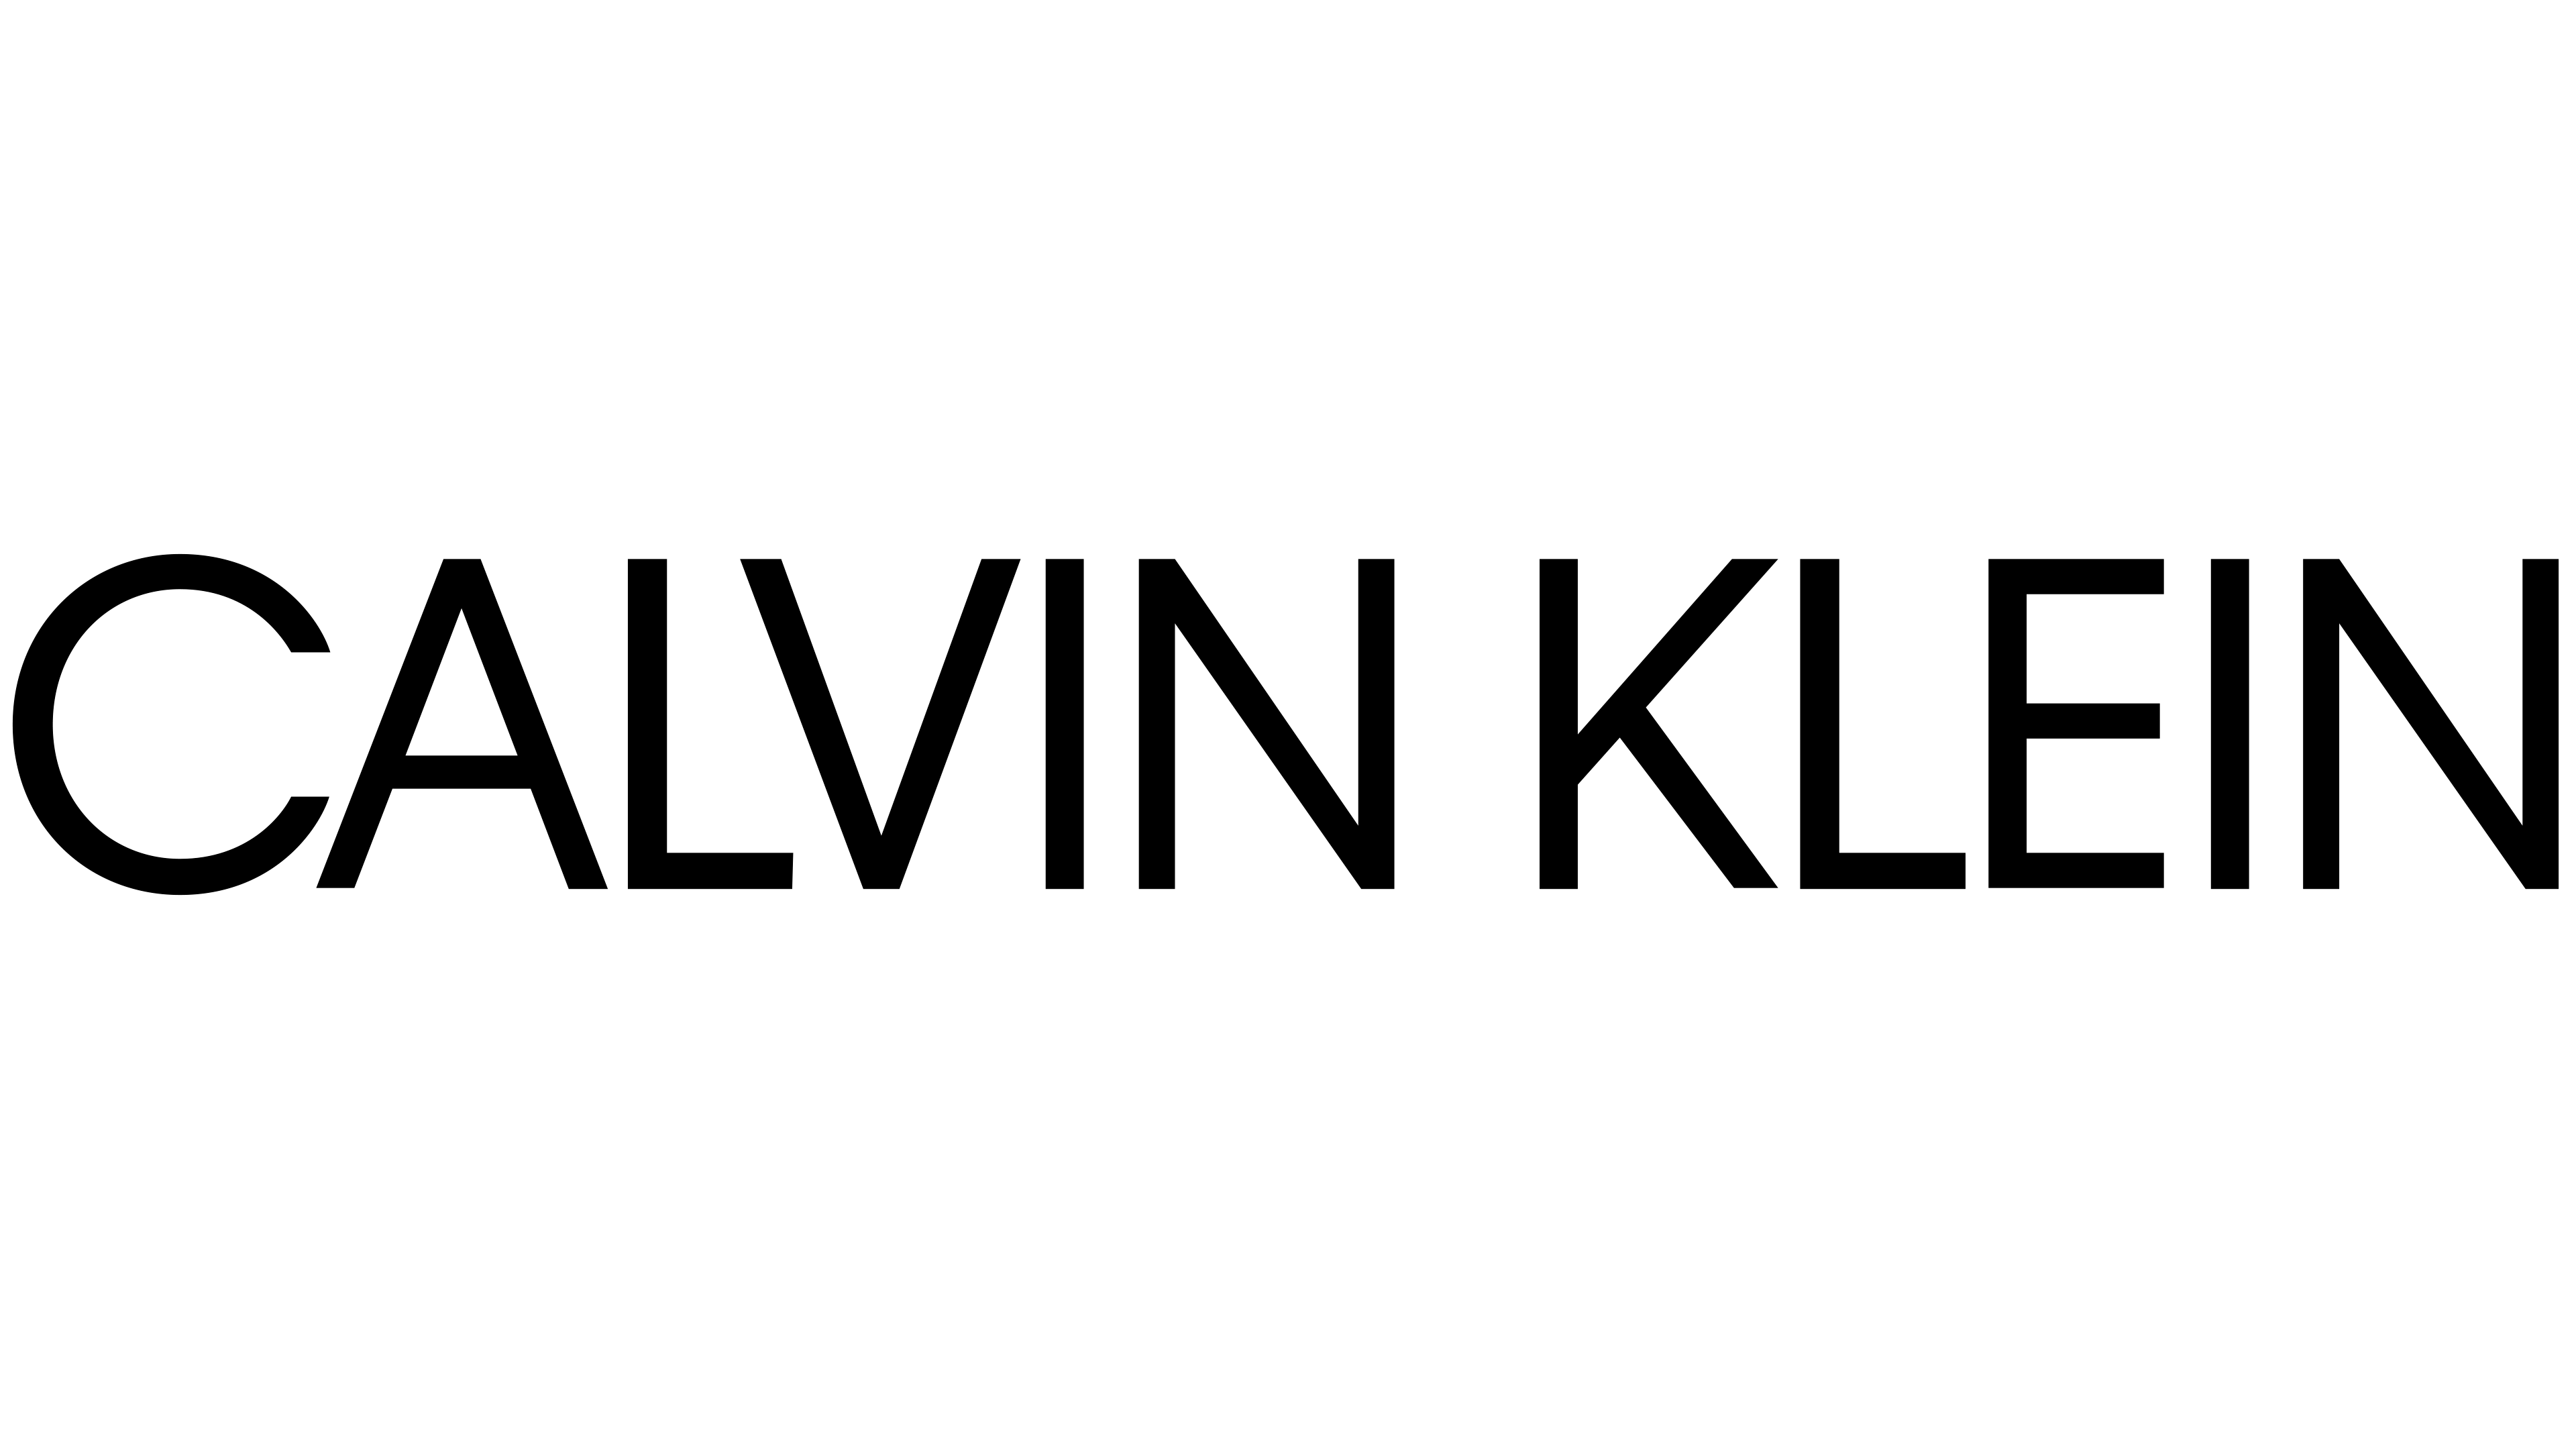 Cupones, Códigos Promocionales Y Descuentos En CALVIN KLEIN Coupons & Promo Codes